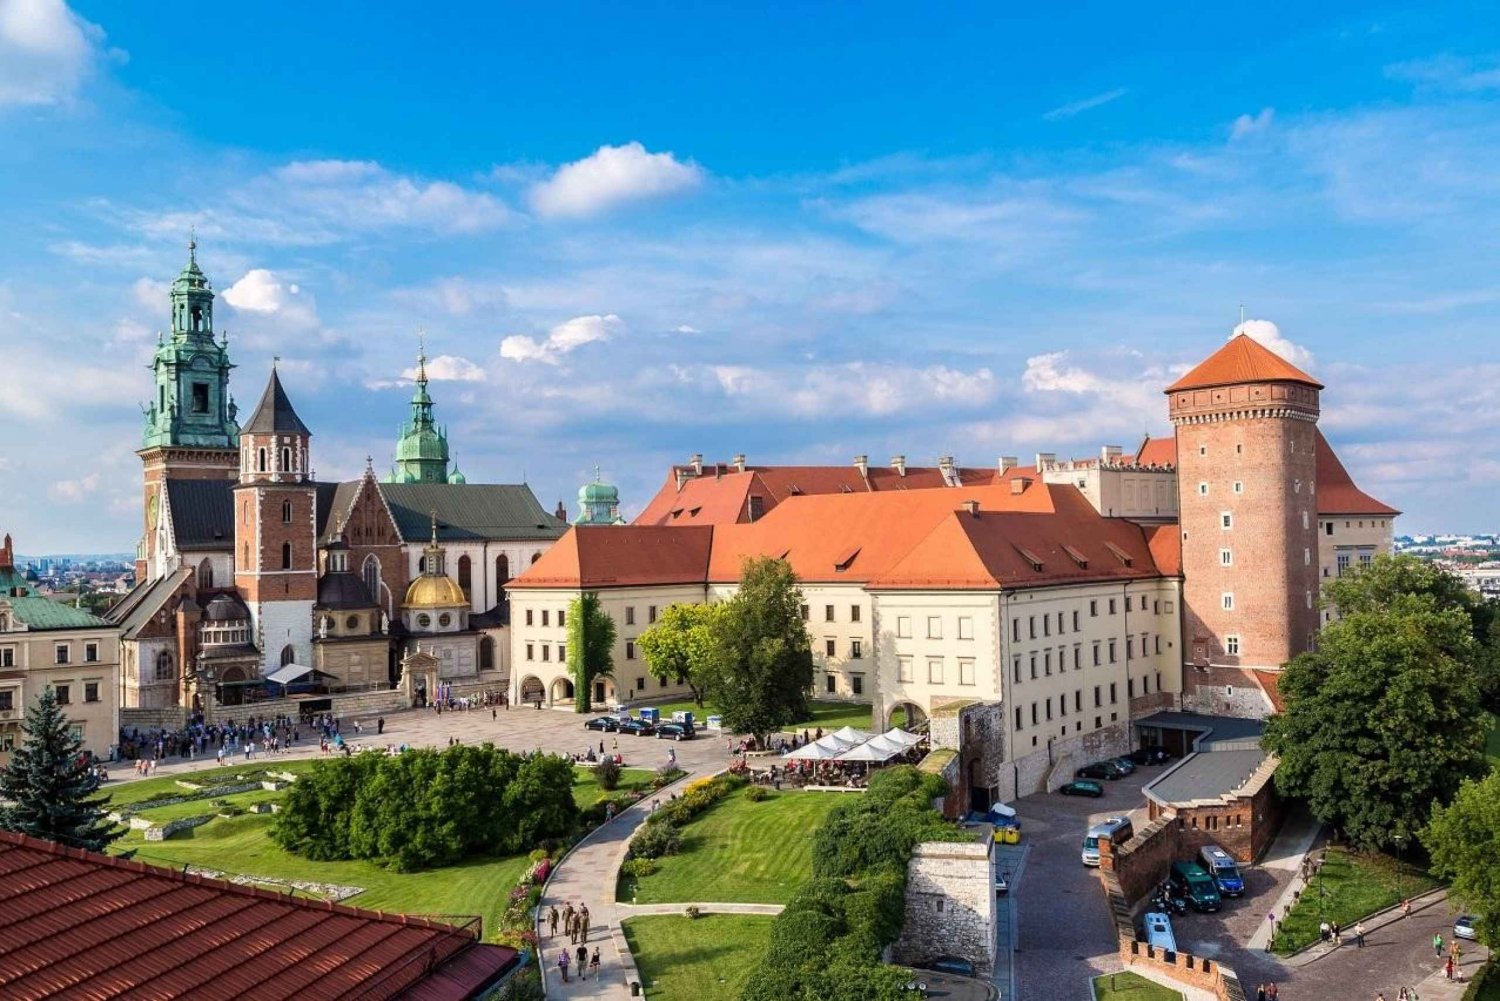 Wawel-slottet, den gamle bydel, Mariabasilikaen og det underjordiske museum